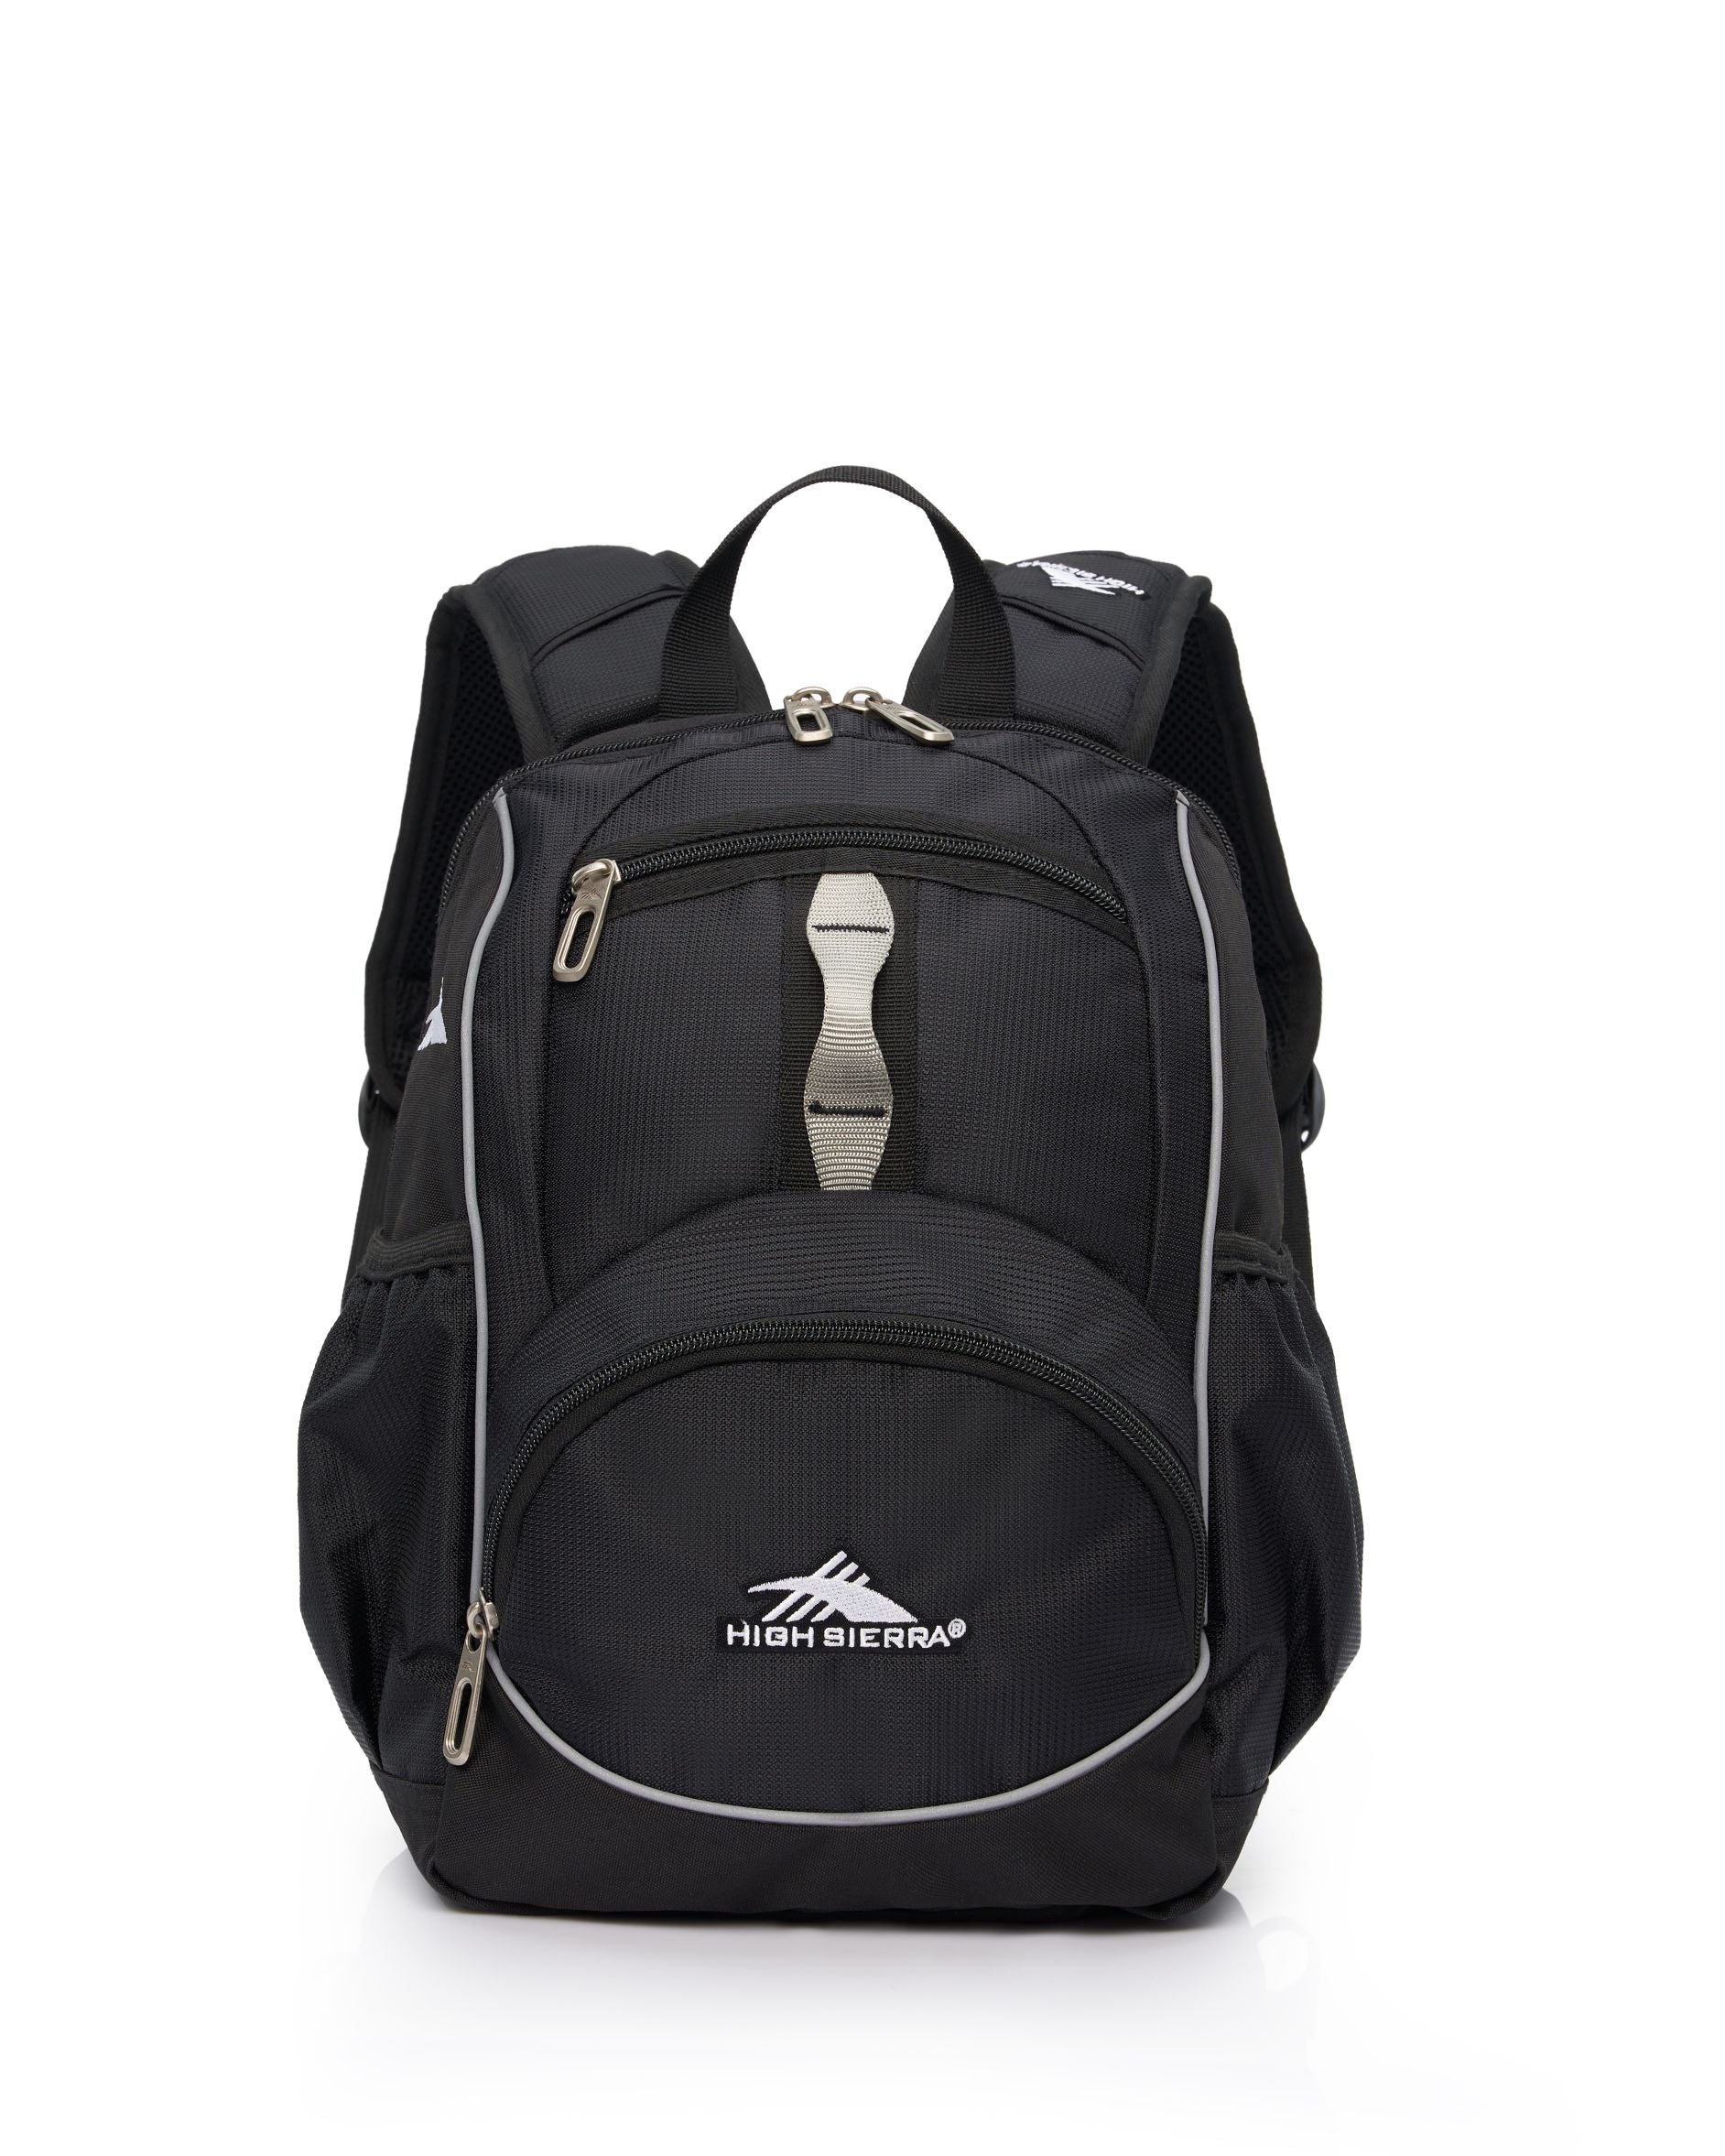 High Sierra - Mini Backpack 2.0 - Black/Silver - 0